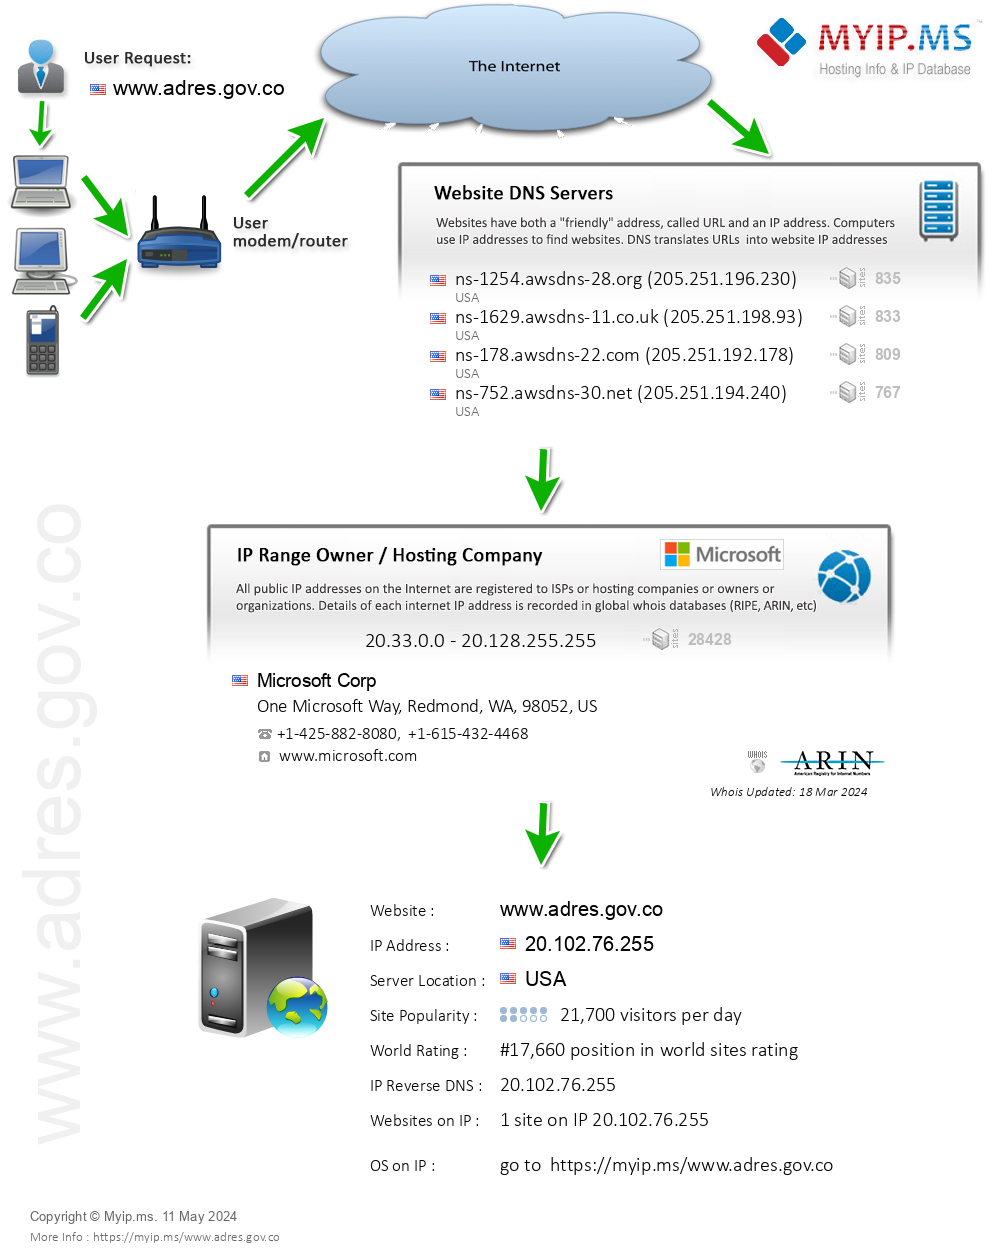 Adres.gov.co - Website Hosting Visual IP Diagram